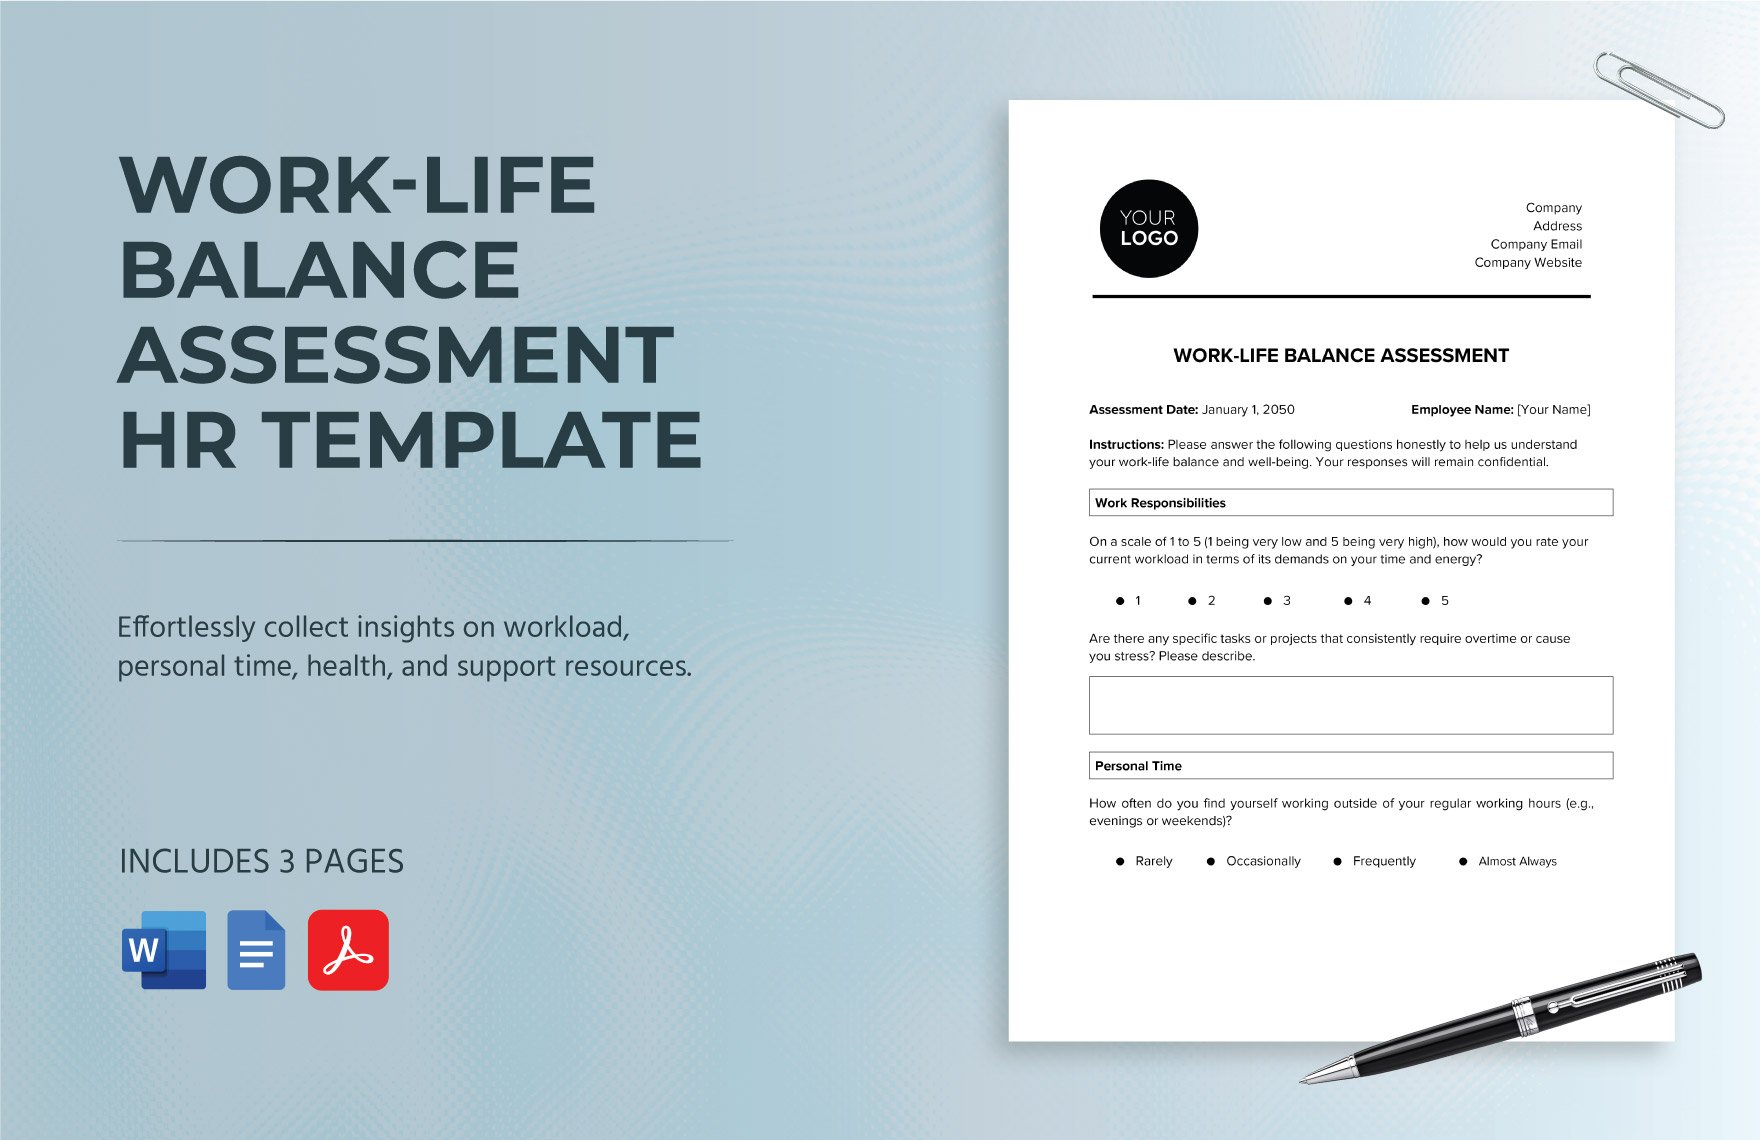 Work-life Balance Assessment HR Template